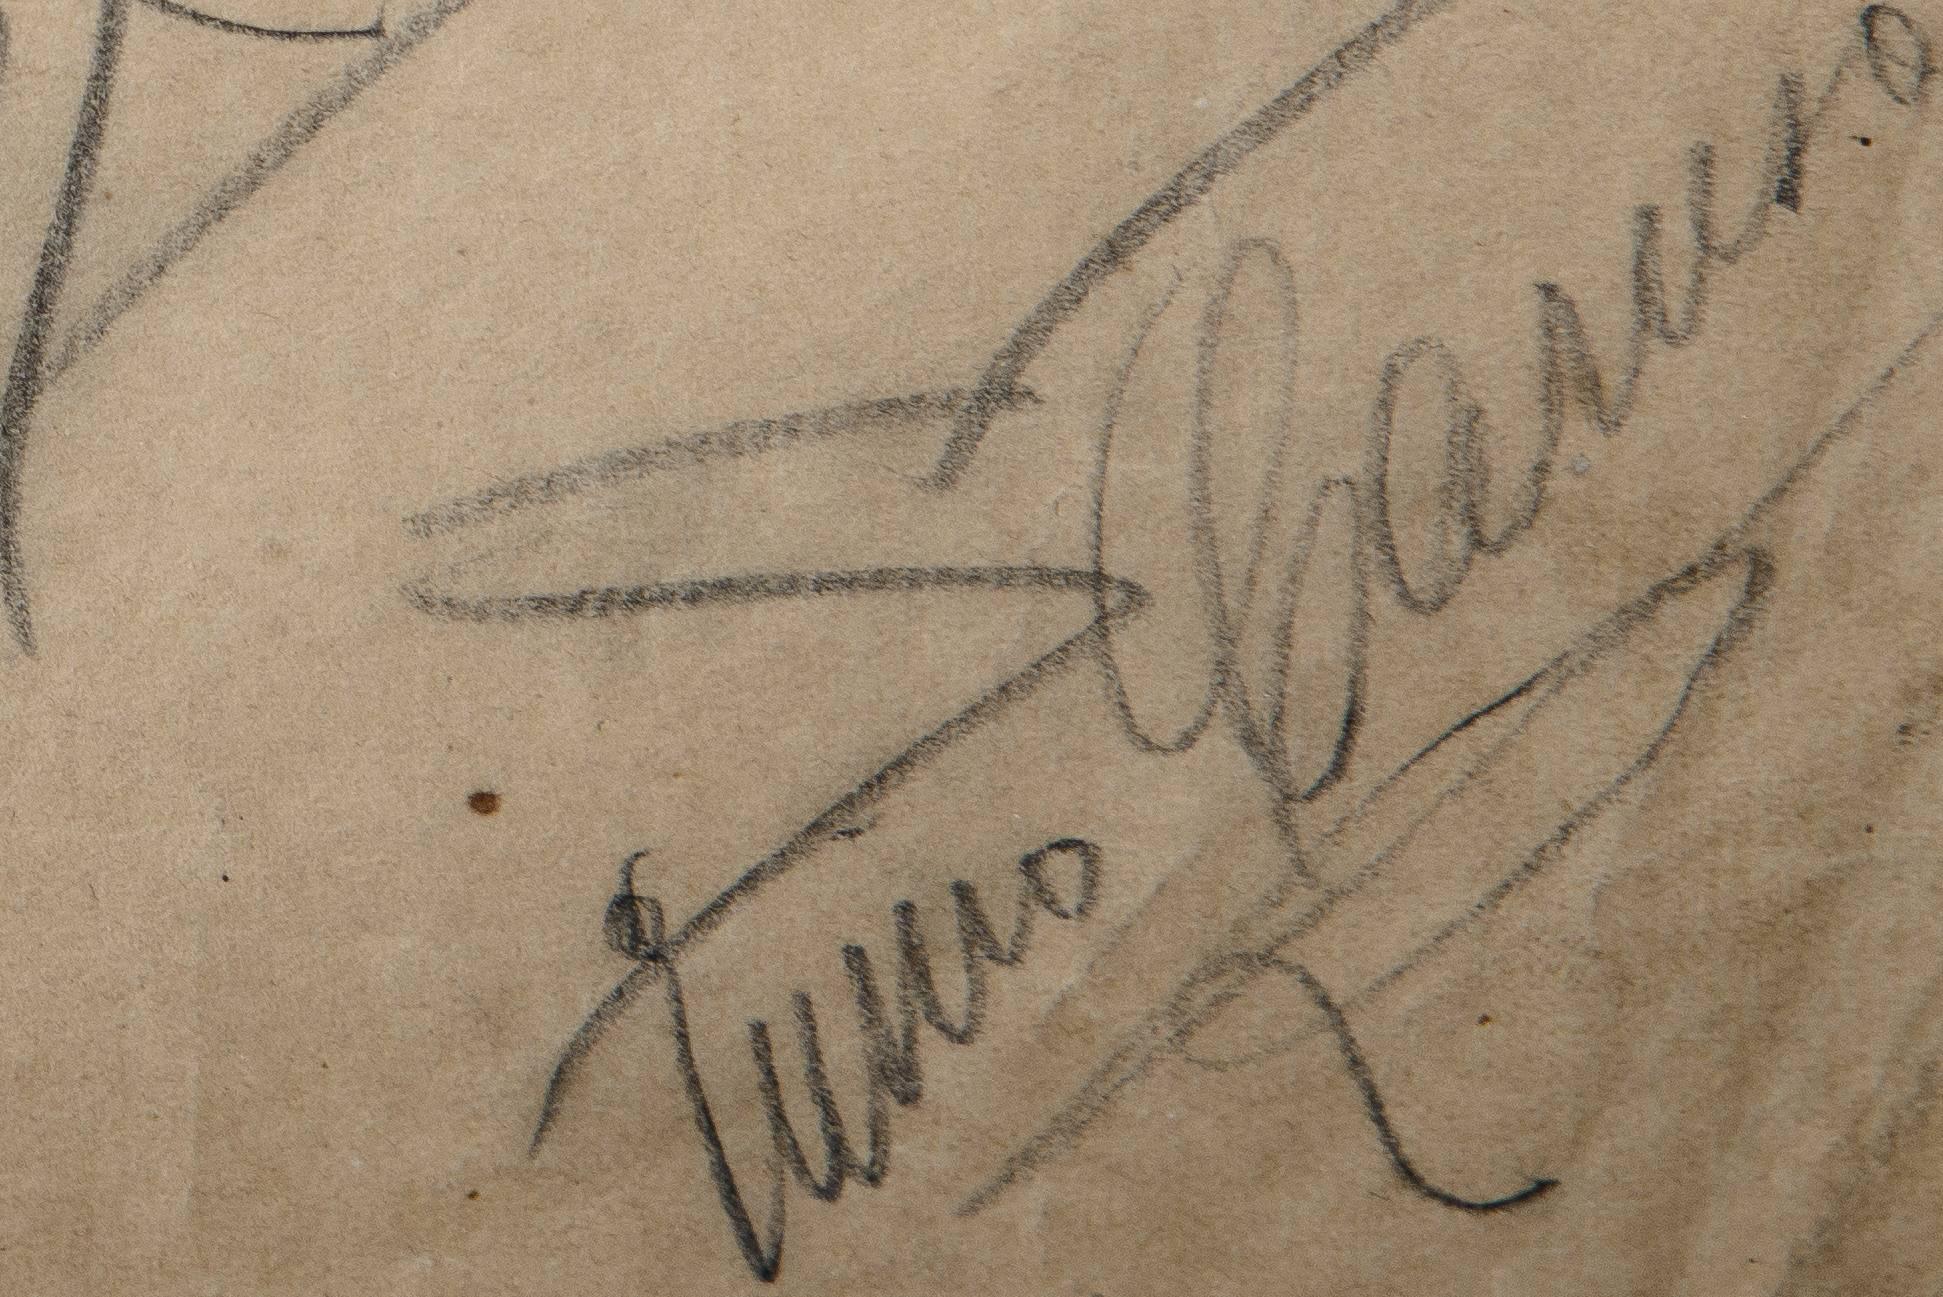 Romantic Signed Pencil Sketch of Enrico Caruso and Arturo Buzzi-Peccia by Enrico Caruso For Sale